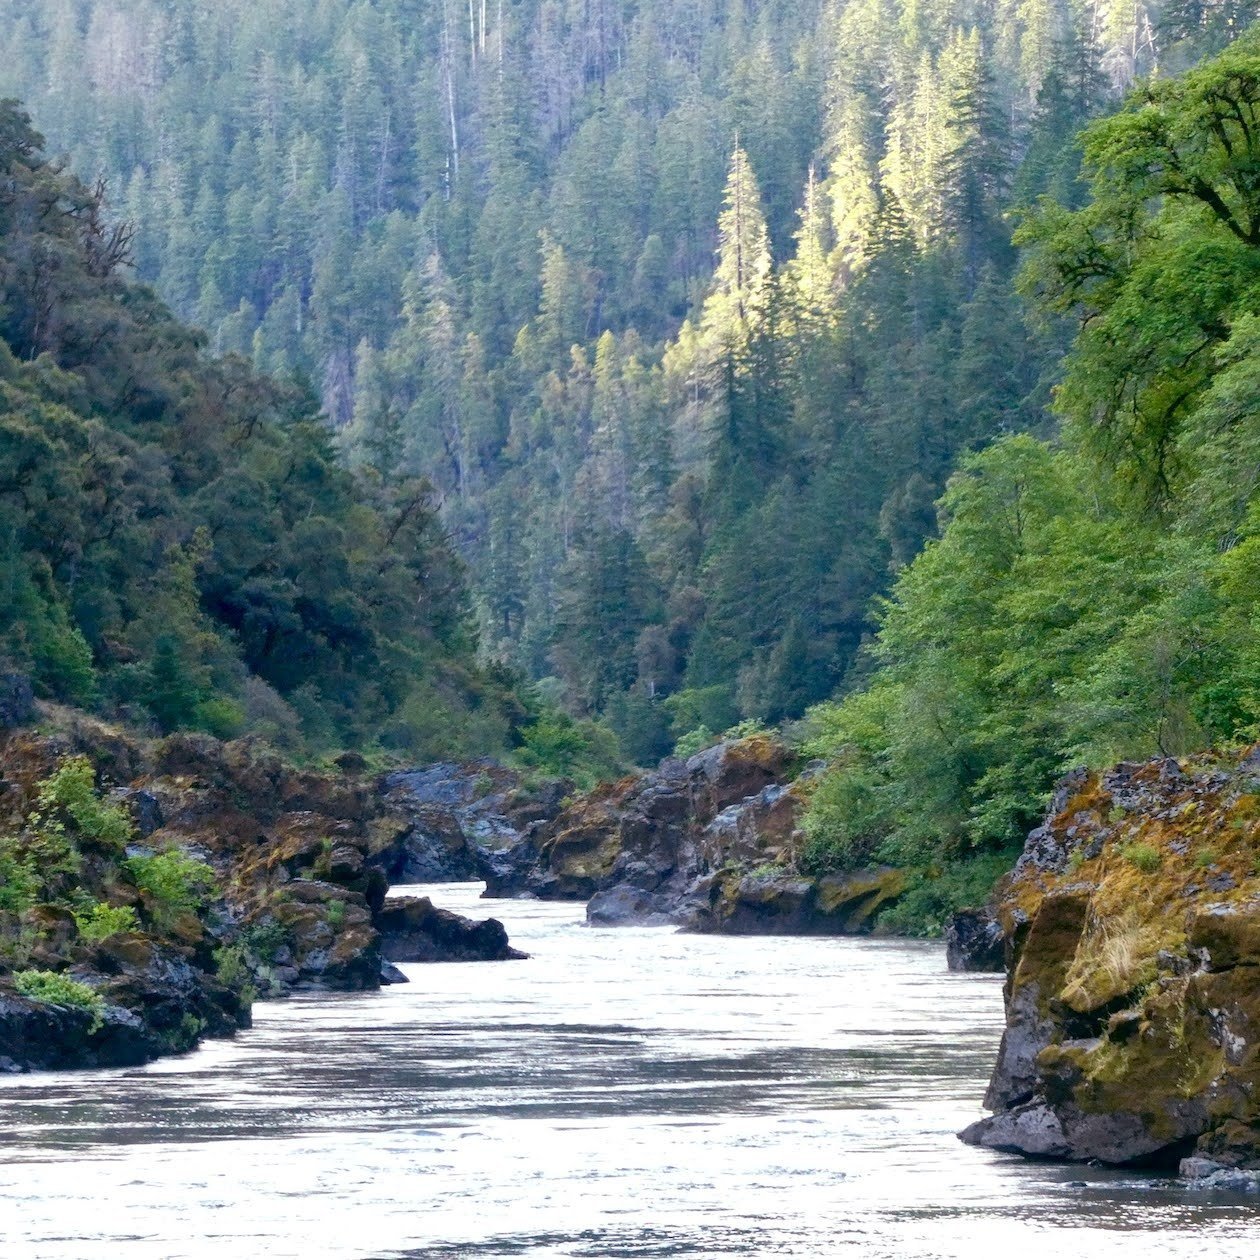 Lower+Rogue+River+near+Kelsey+creek+lndscp+%282%29.jpg